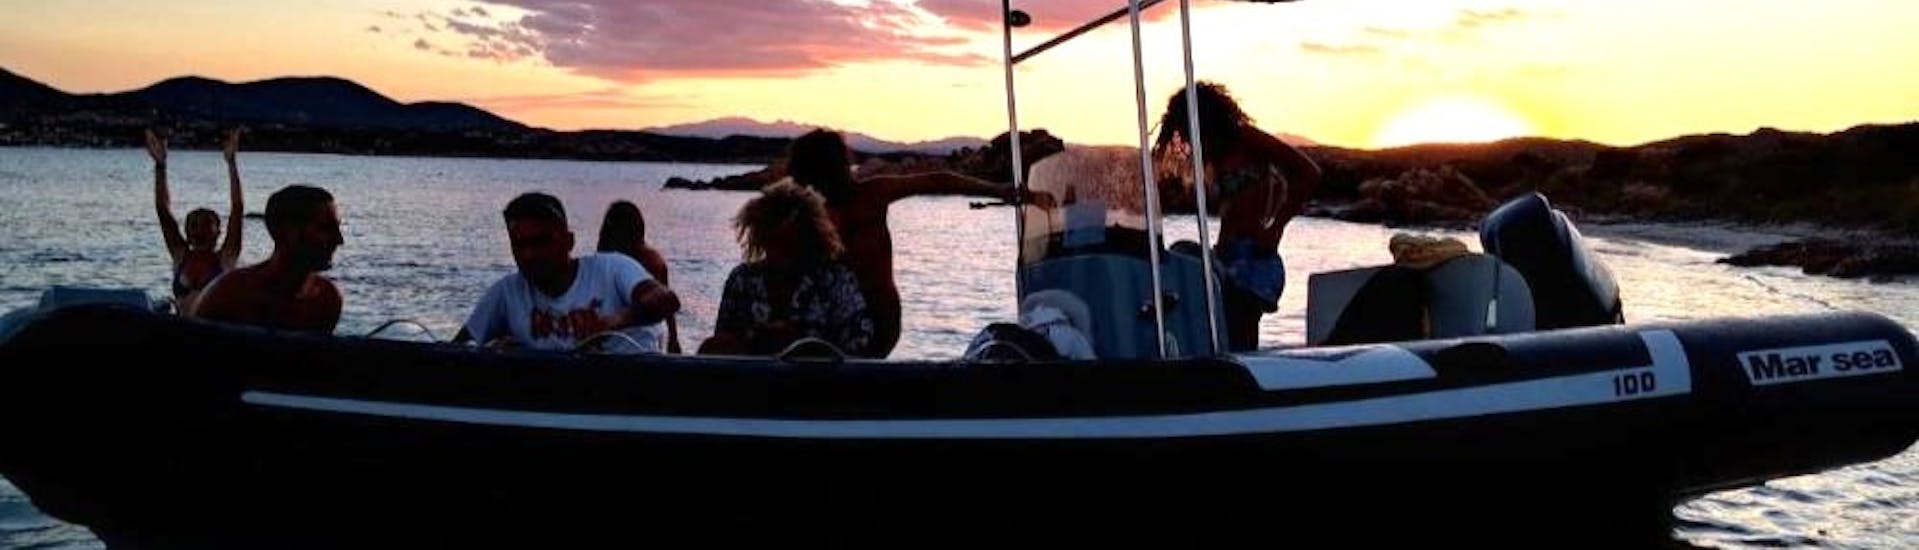 Das Boot, das während der privaten Sunset RIB Bootstour von Spiaggia la Salinedda mit Apéritif mit Salimar San Teodoro verwendet wird.